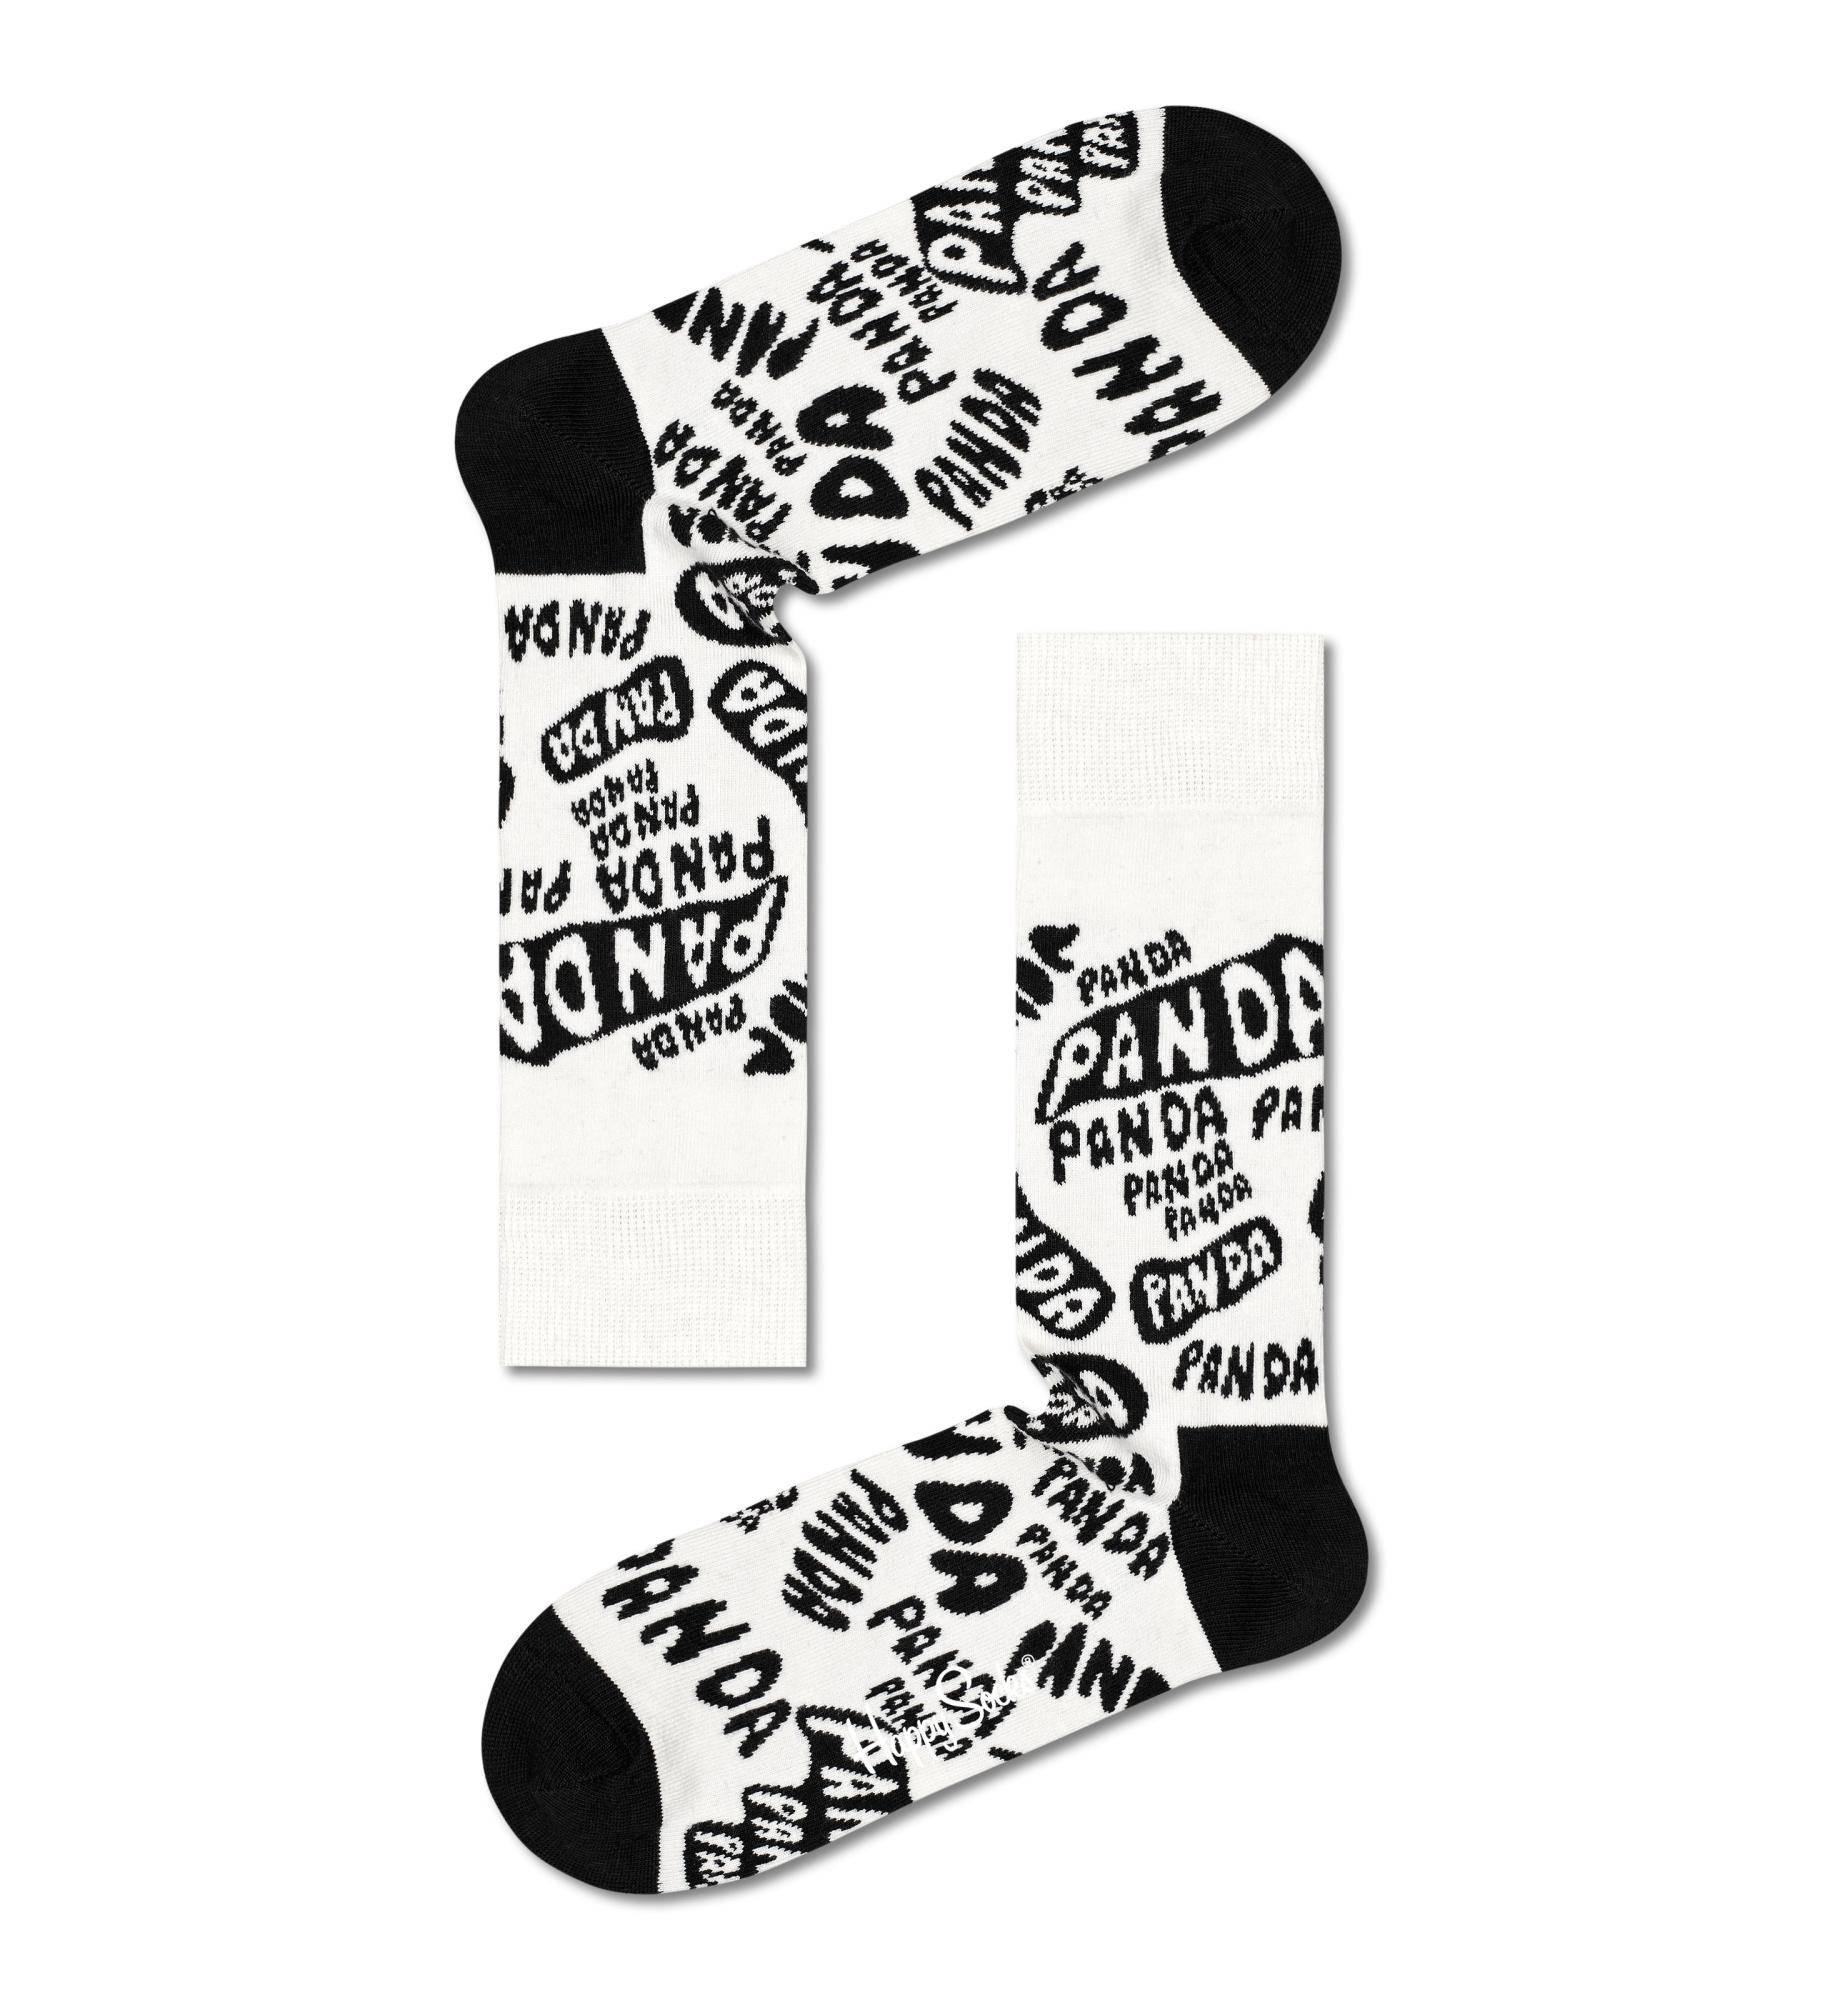 Носки Happy socks Panda - Panda - Panda Sock PAN01 1900, размер 25 - фото 1